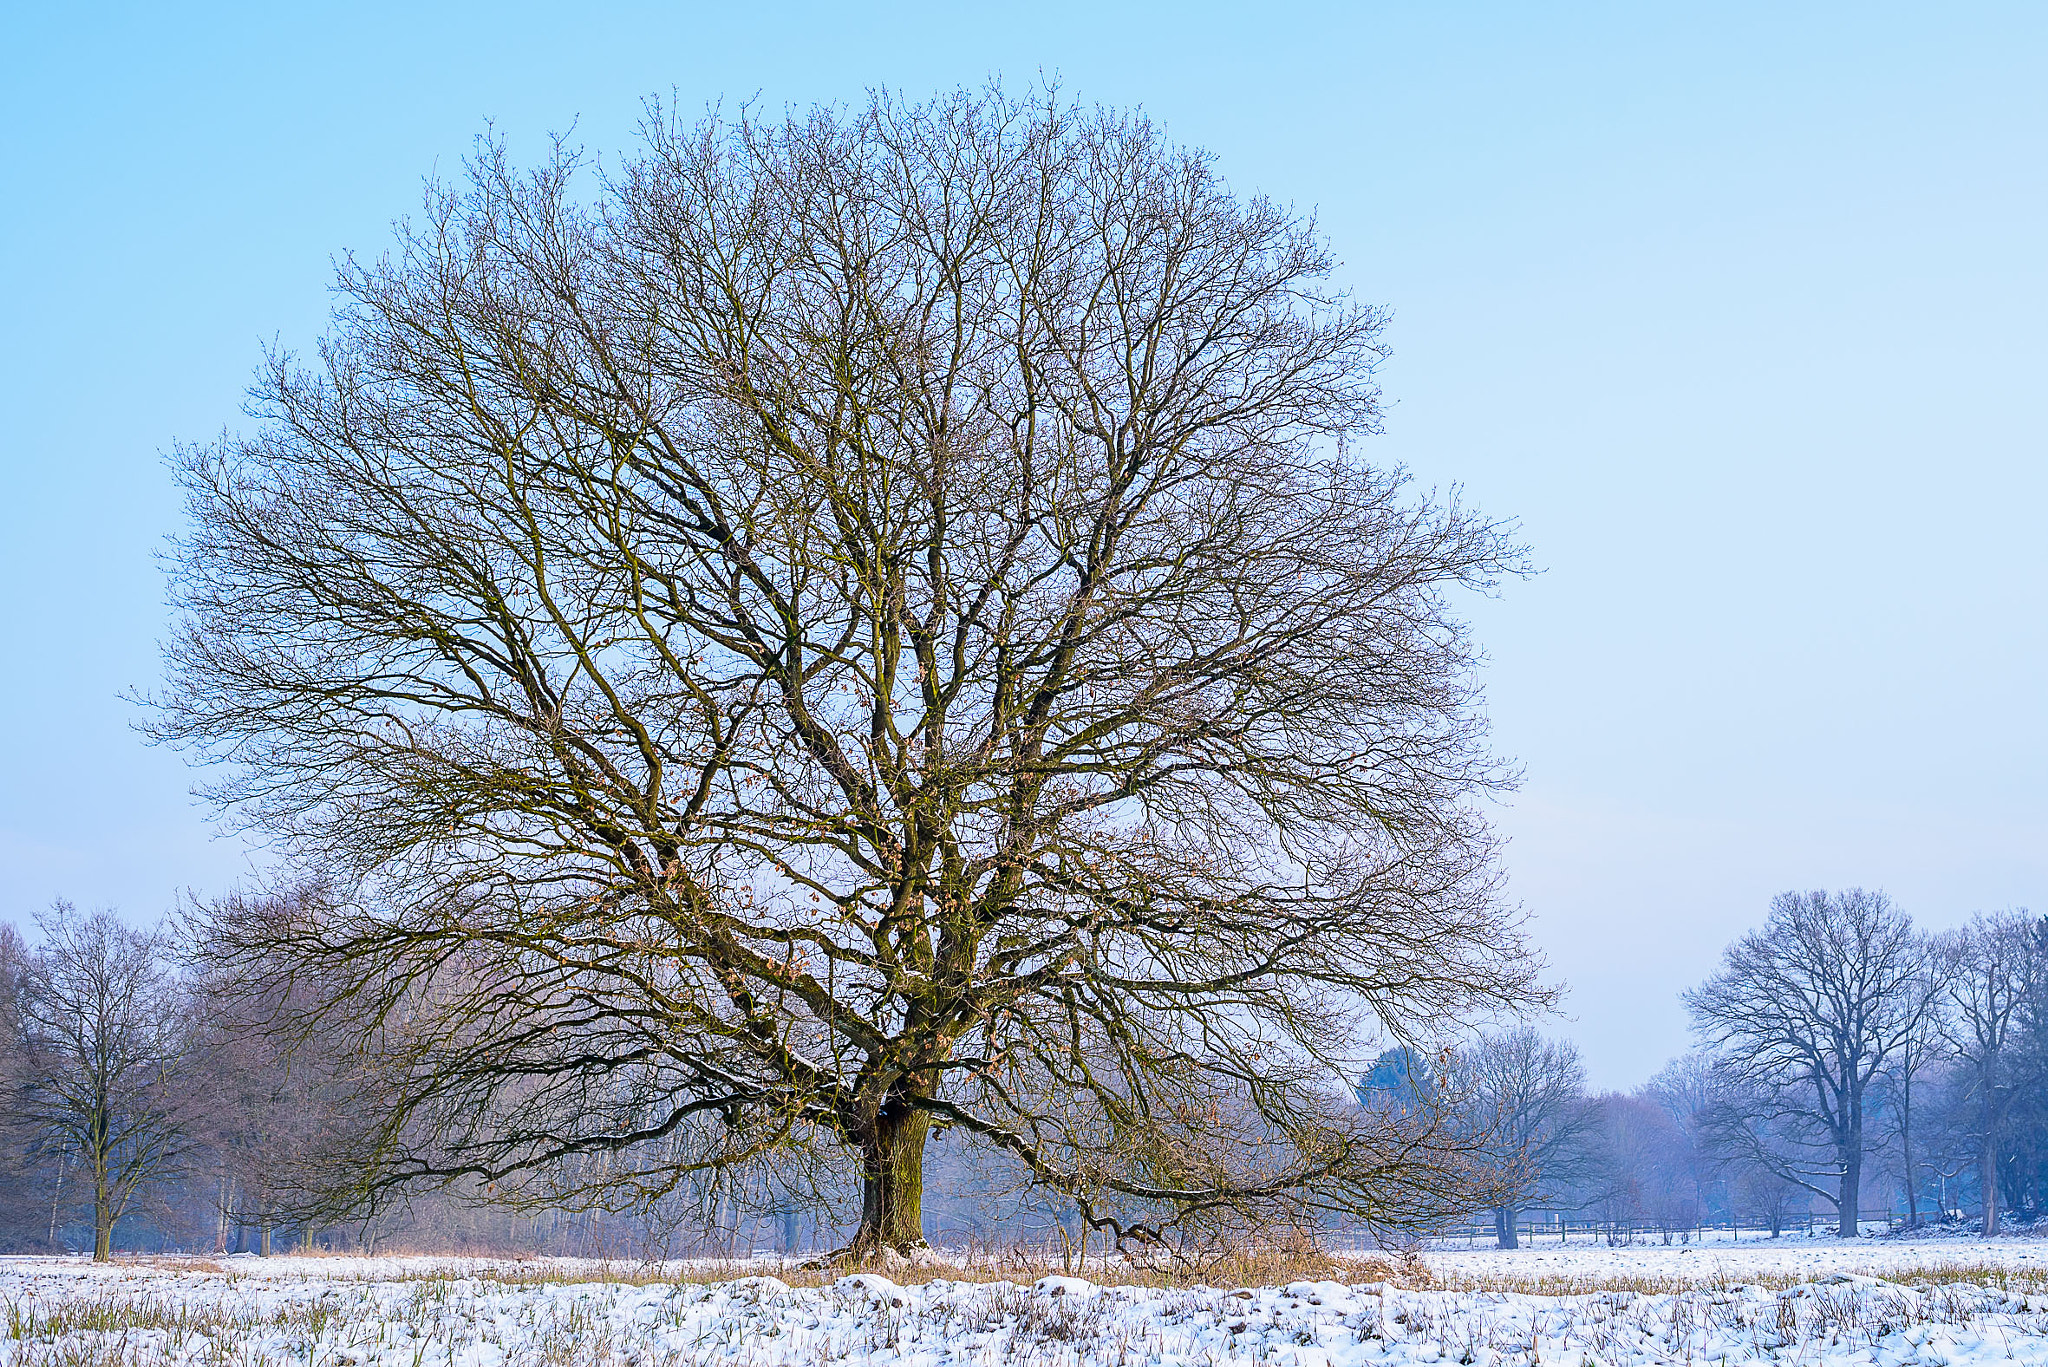 AF Nikkor 35mm f/2 sample photo. Winter oak - morning mood#3 photography